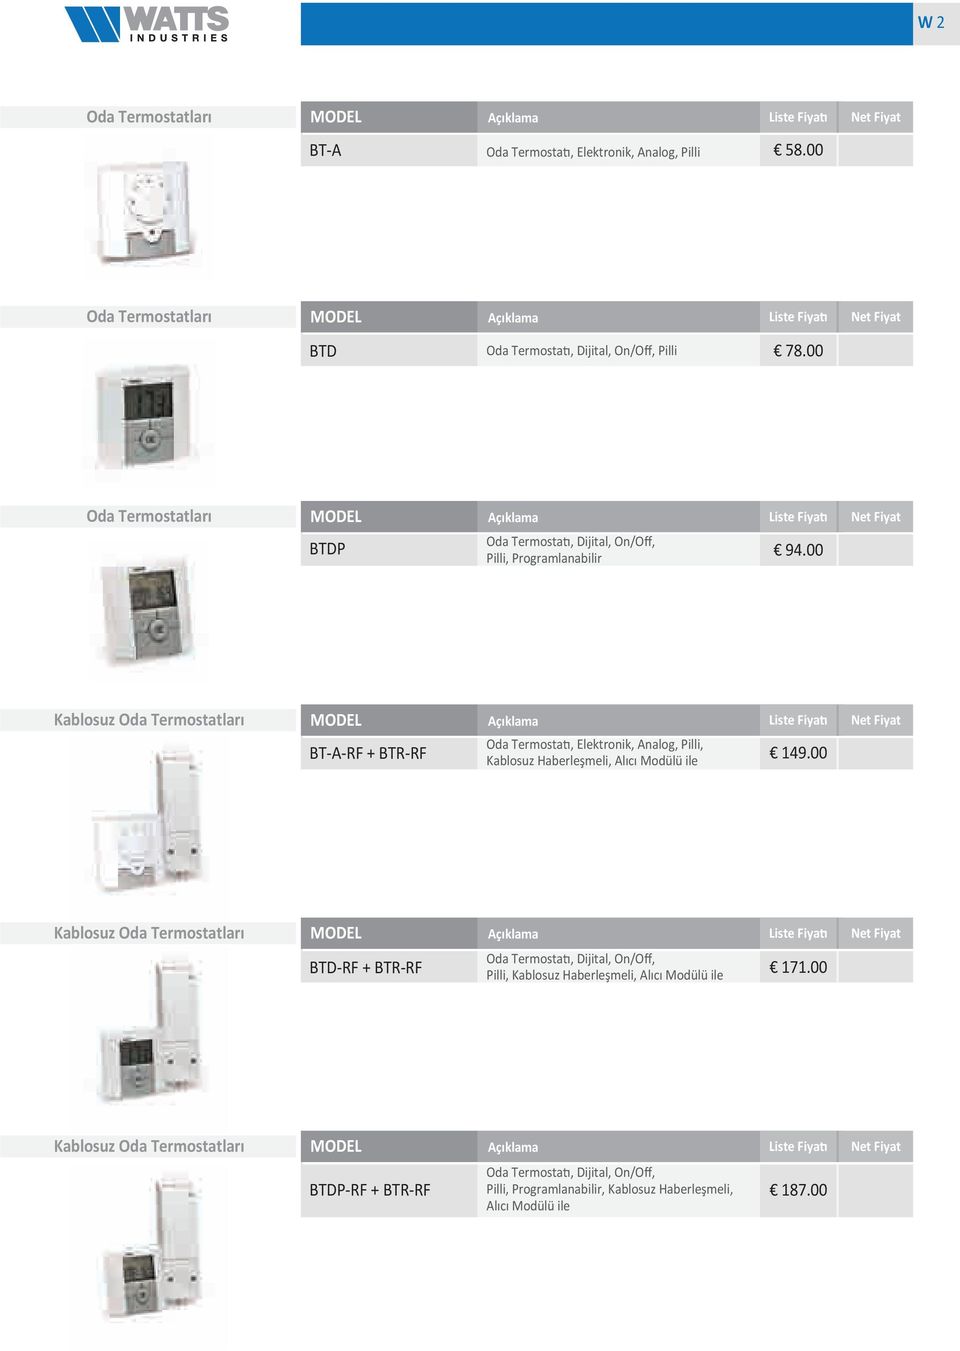 00 Oda Termostatları MODEL Açıklama Liste Fiyatı Net Fiyat Oda Termostatı, Dijital, On/Off, BTDP Pilli, Programlanabilir 94.